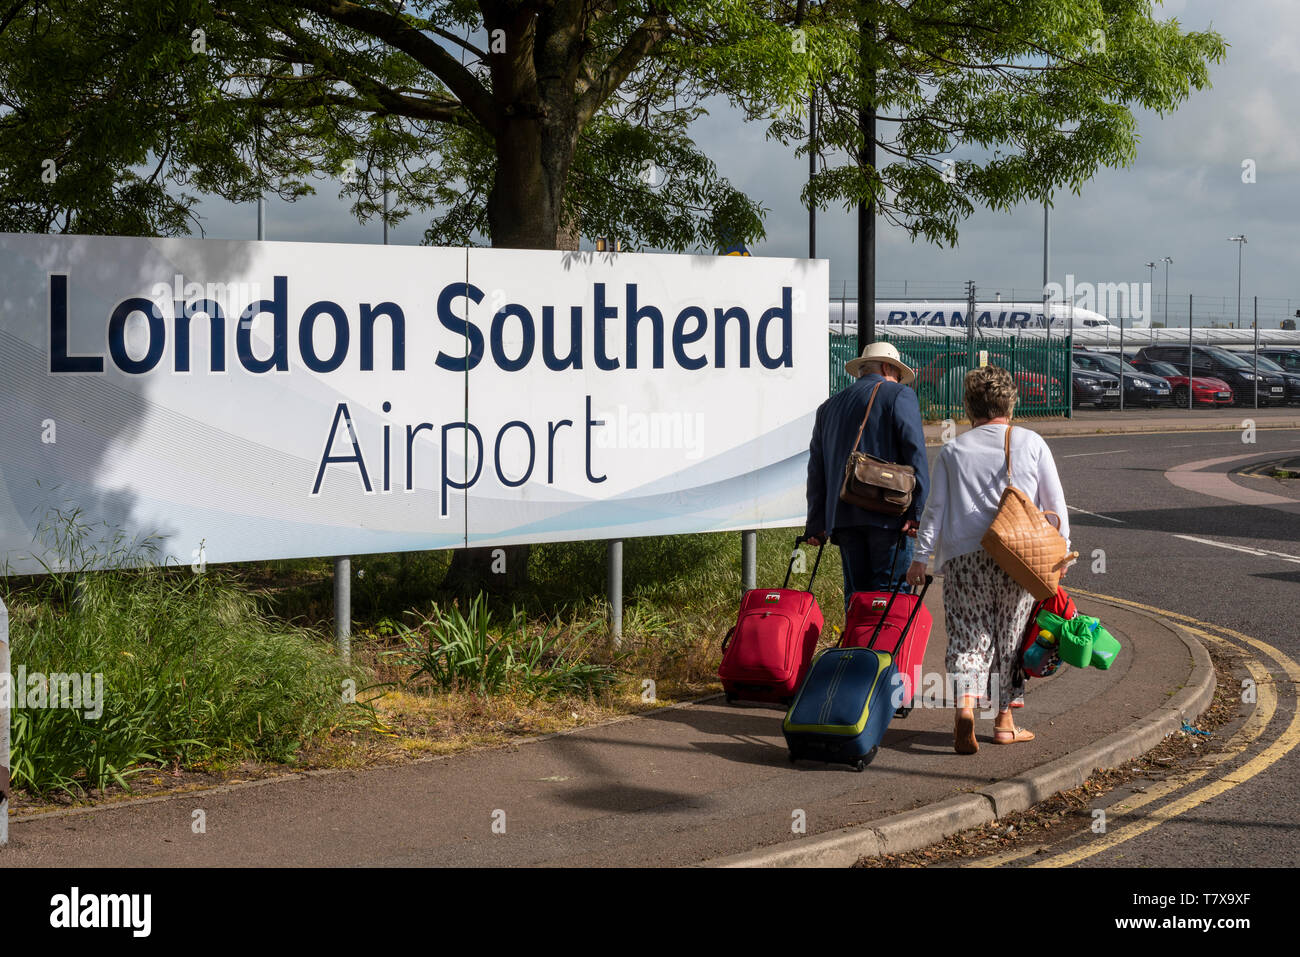 Familie von Passagieren, die am Einfahrtsschild des London Southend Airport vorbeilaufen, mit dem Flugzeug von Ryanair dahinter. Southend on Sea, Essex, Großbritannien Stockfoto